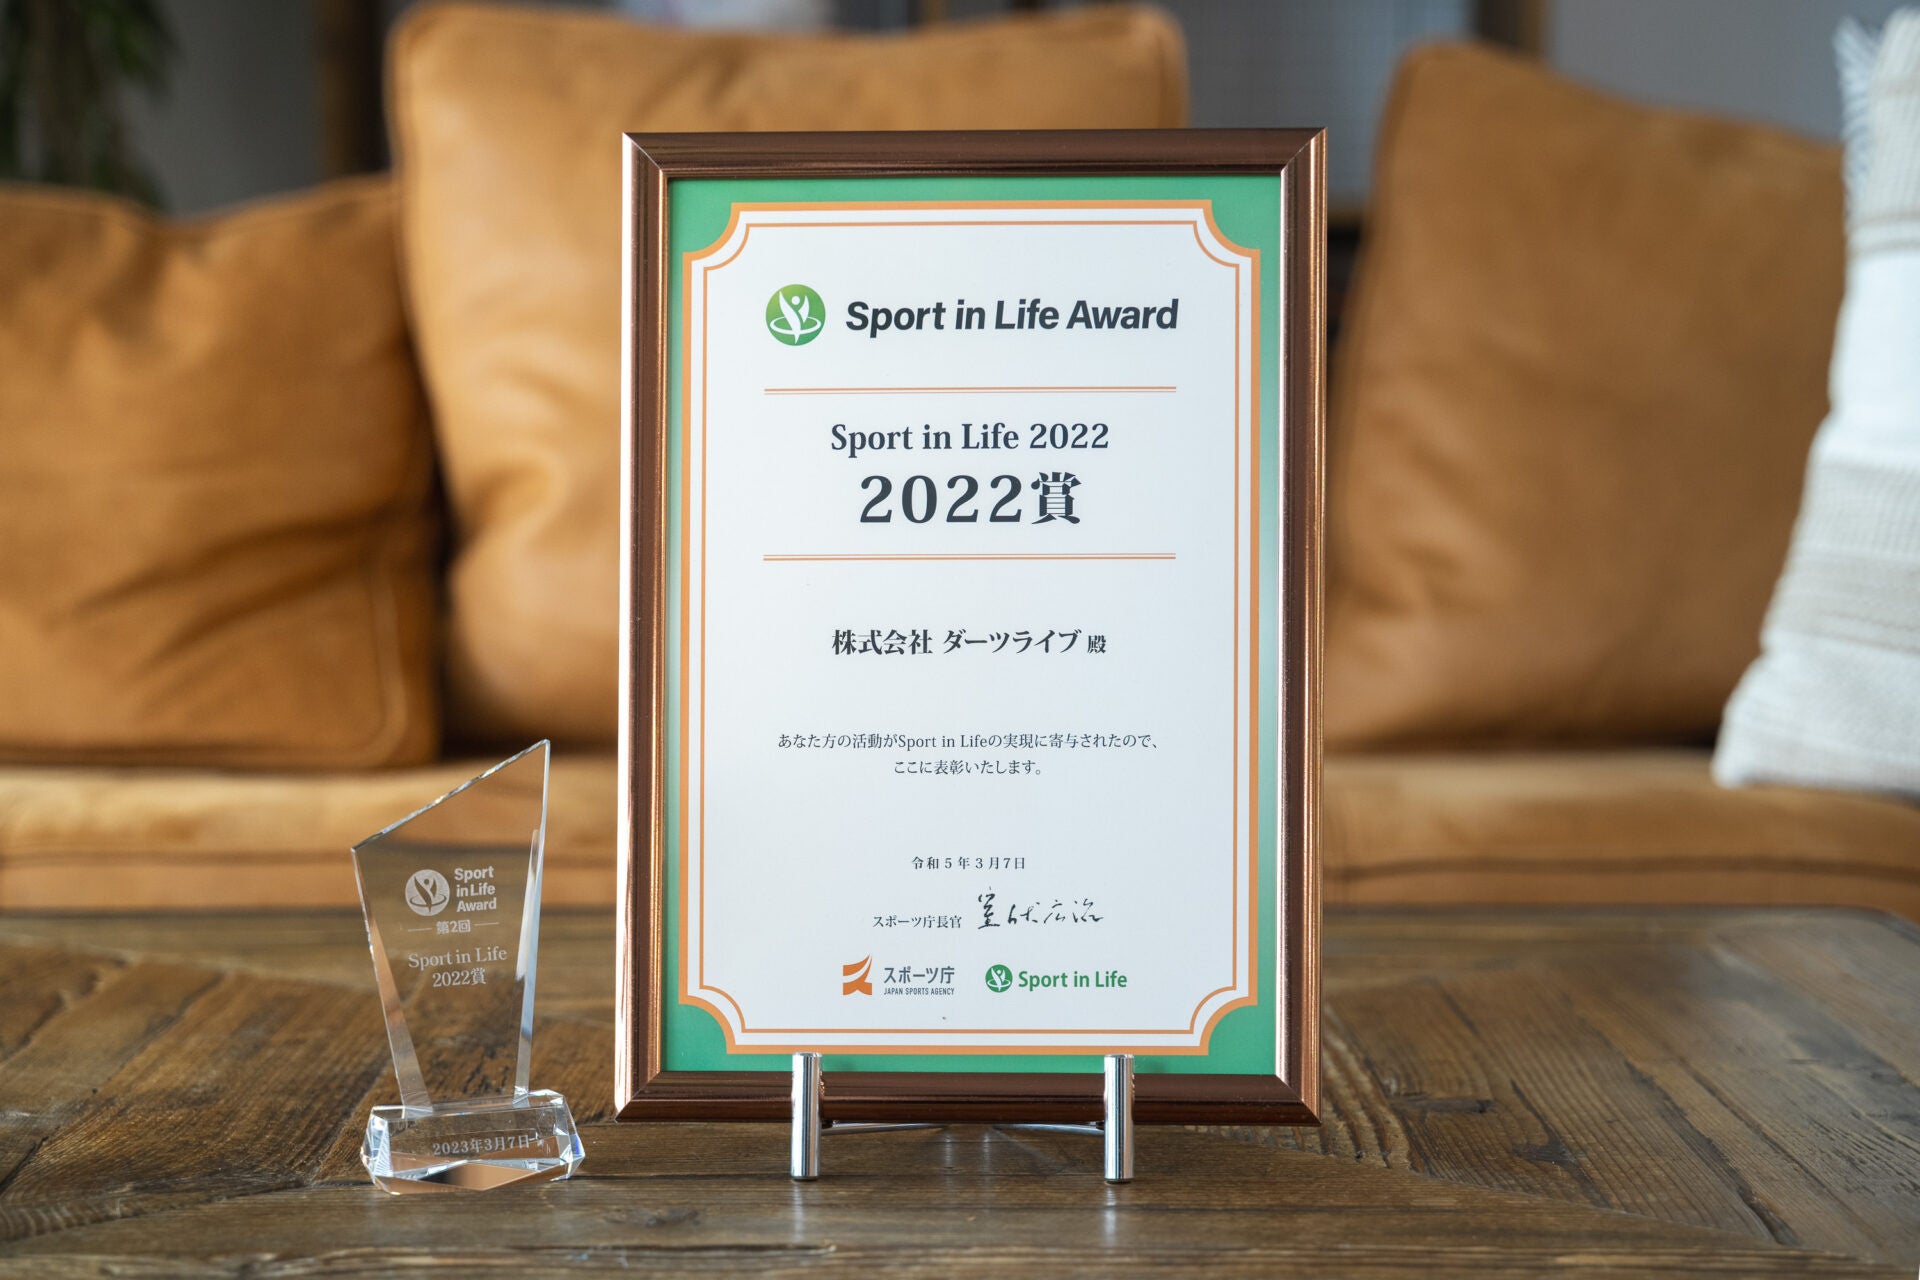 株式会社ダーツライブが取り組むスポーツダーツプロジェクトがスポーツ庁主催「Sport in Life 2022 賞」を受賞しました